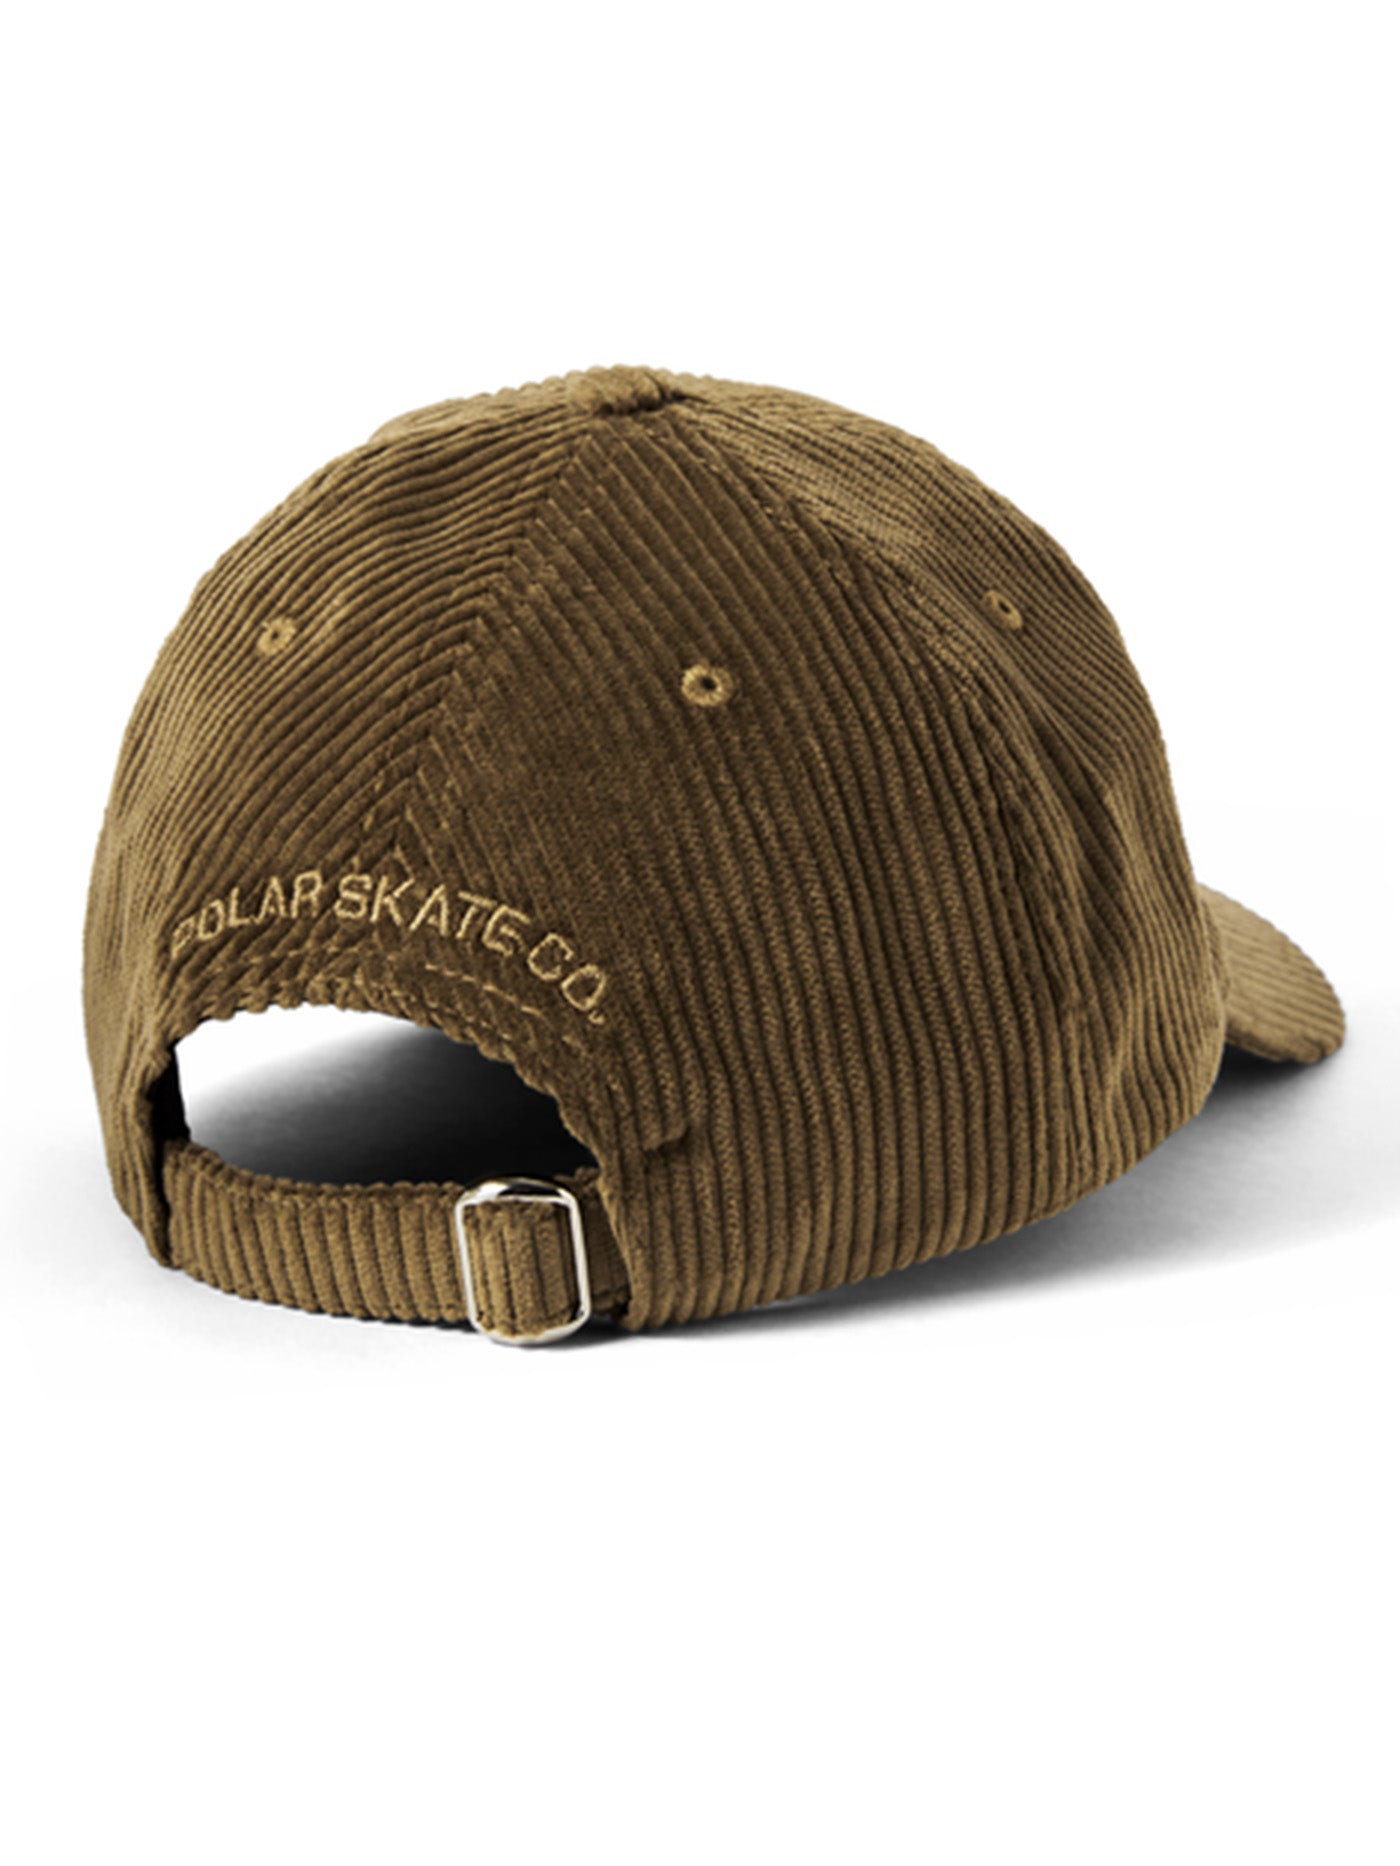 Polar Skate Co. Sam Cord Strapback Hat